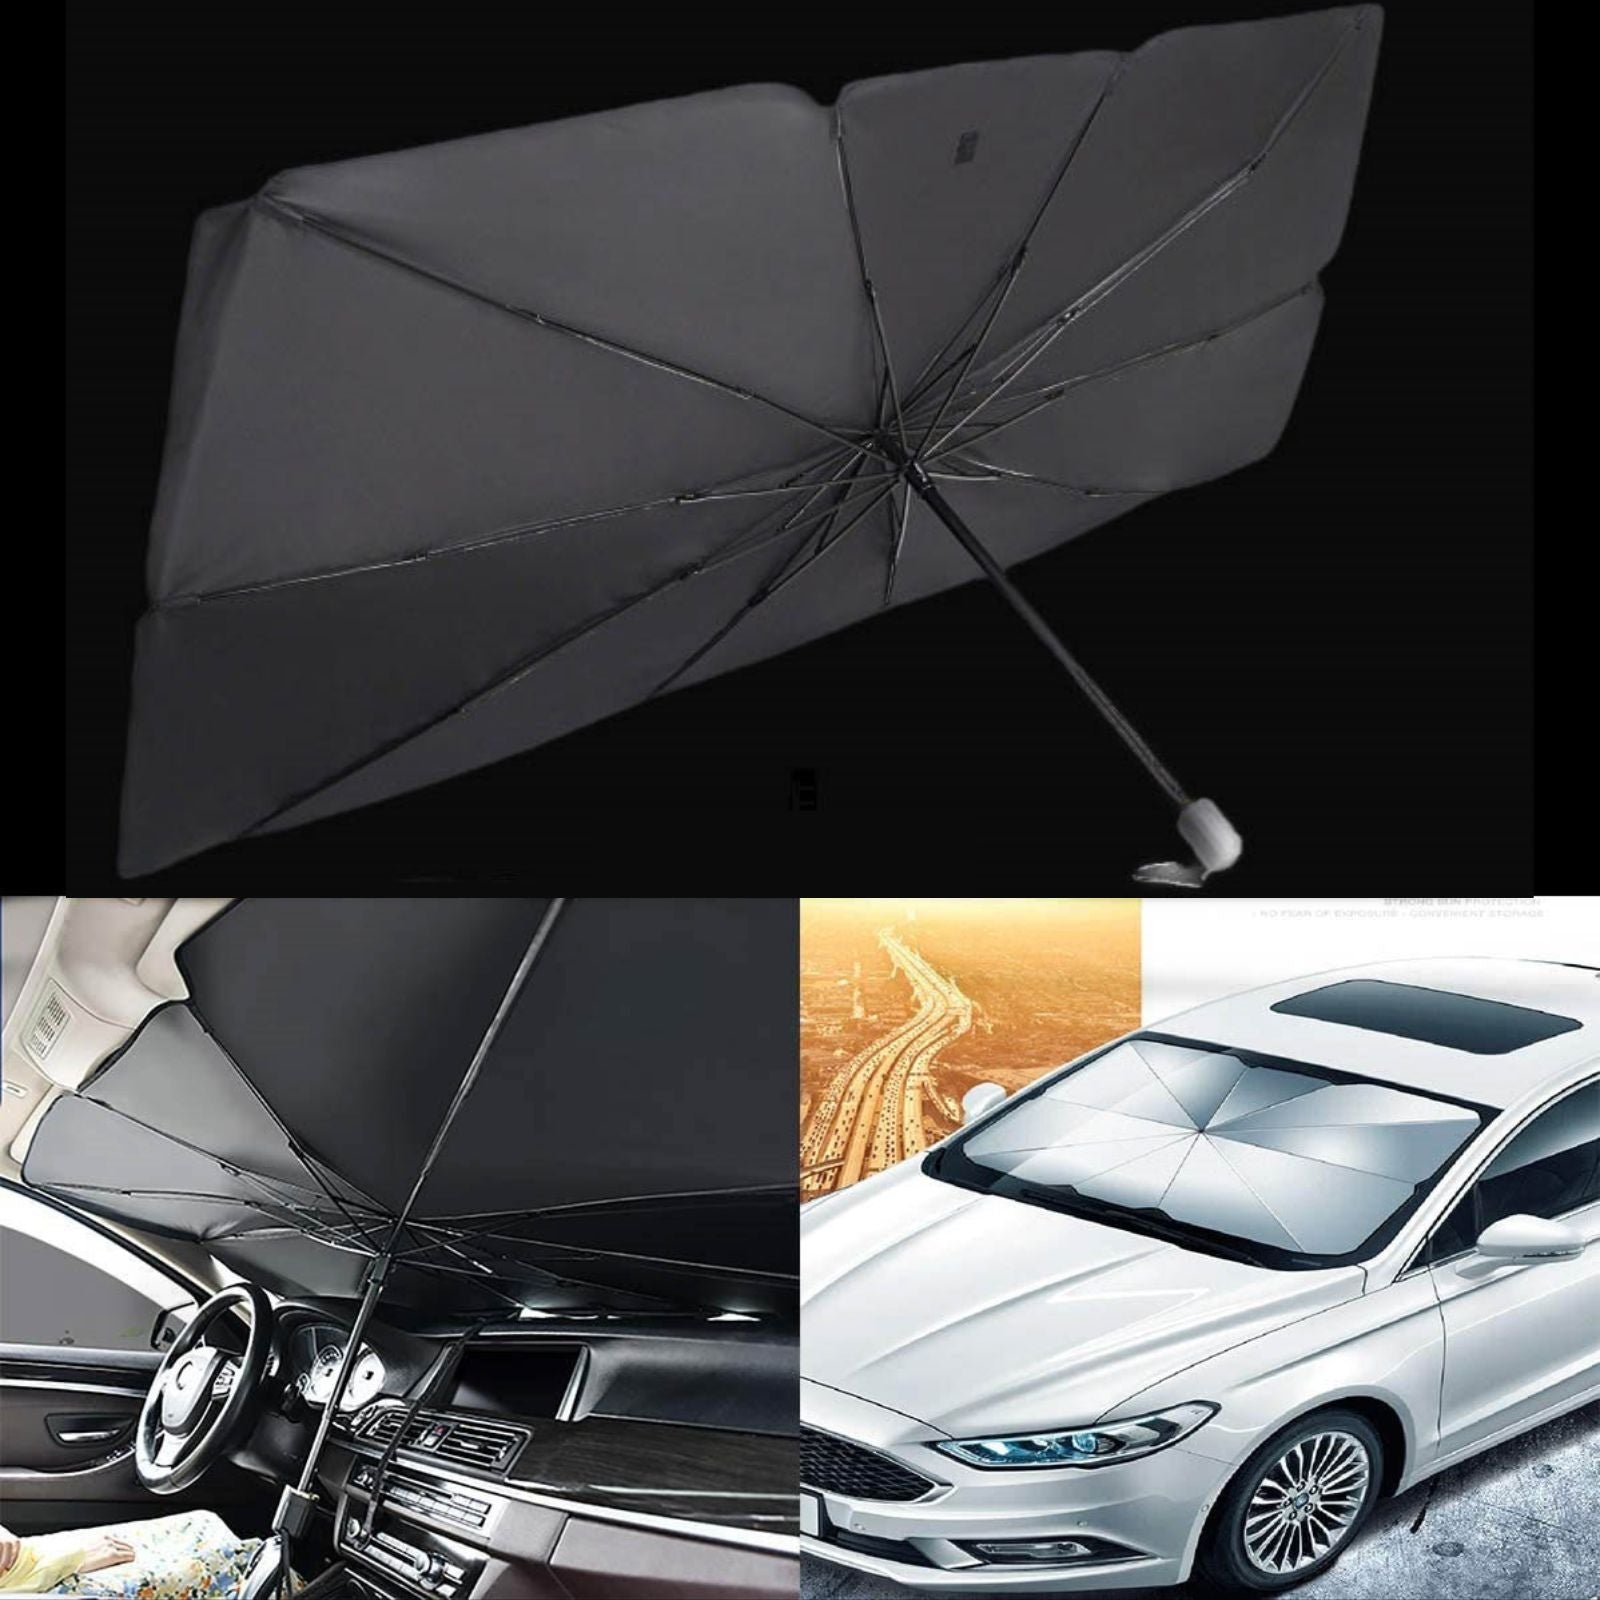 Guarda-sol dobrável para carro em uso e fechado, proteção solar automóvel exemplo